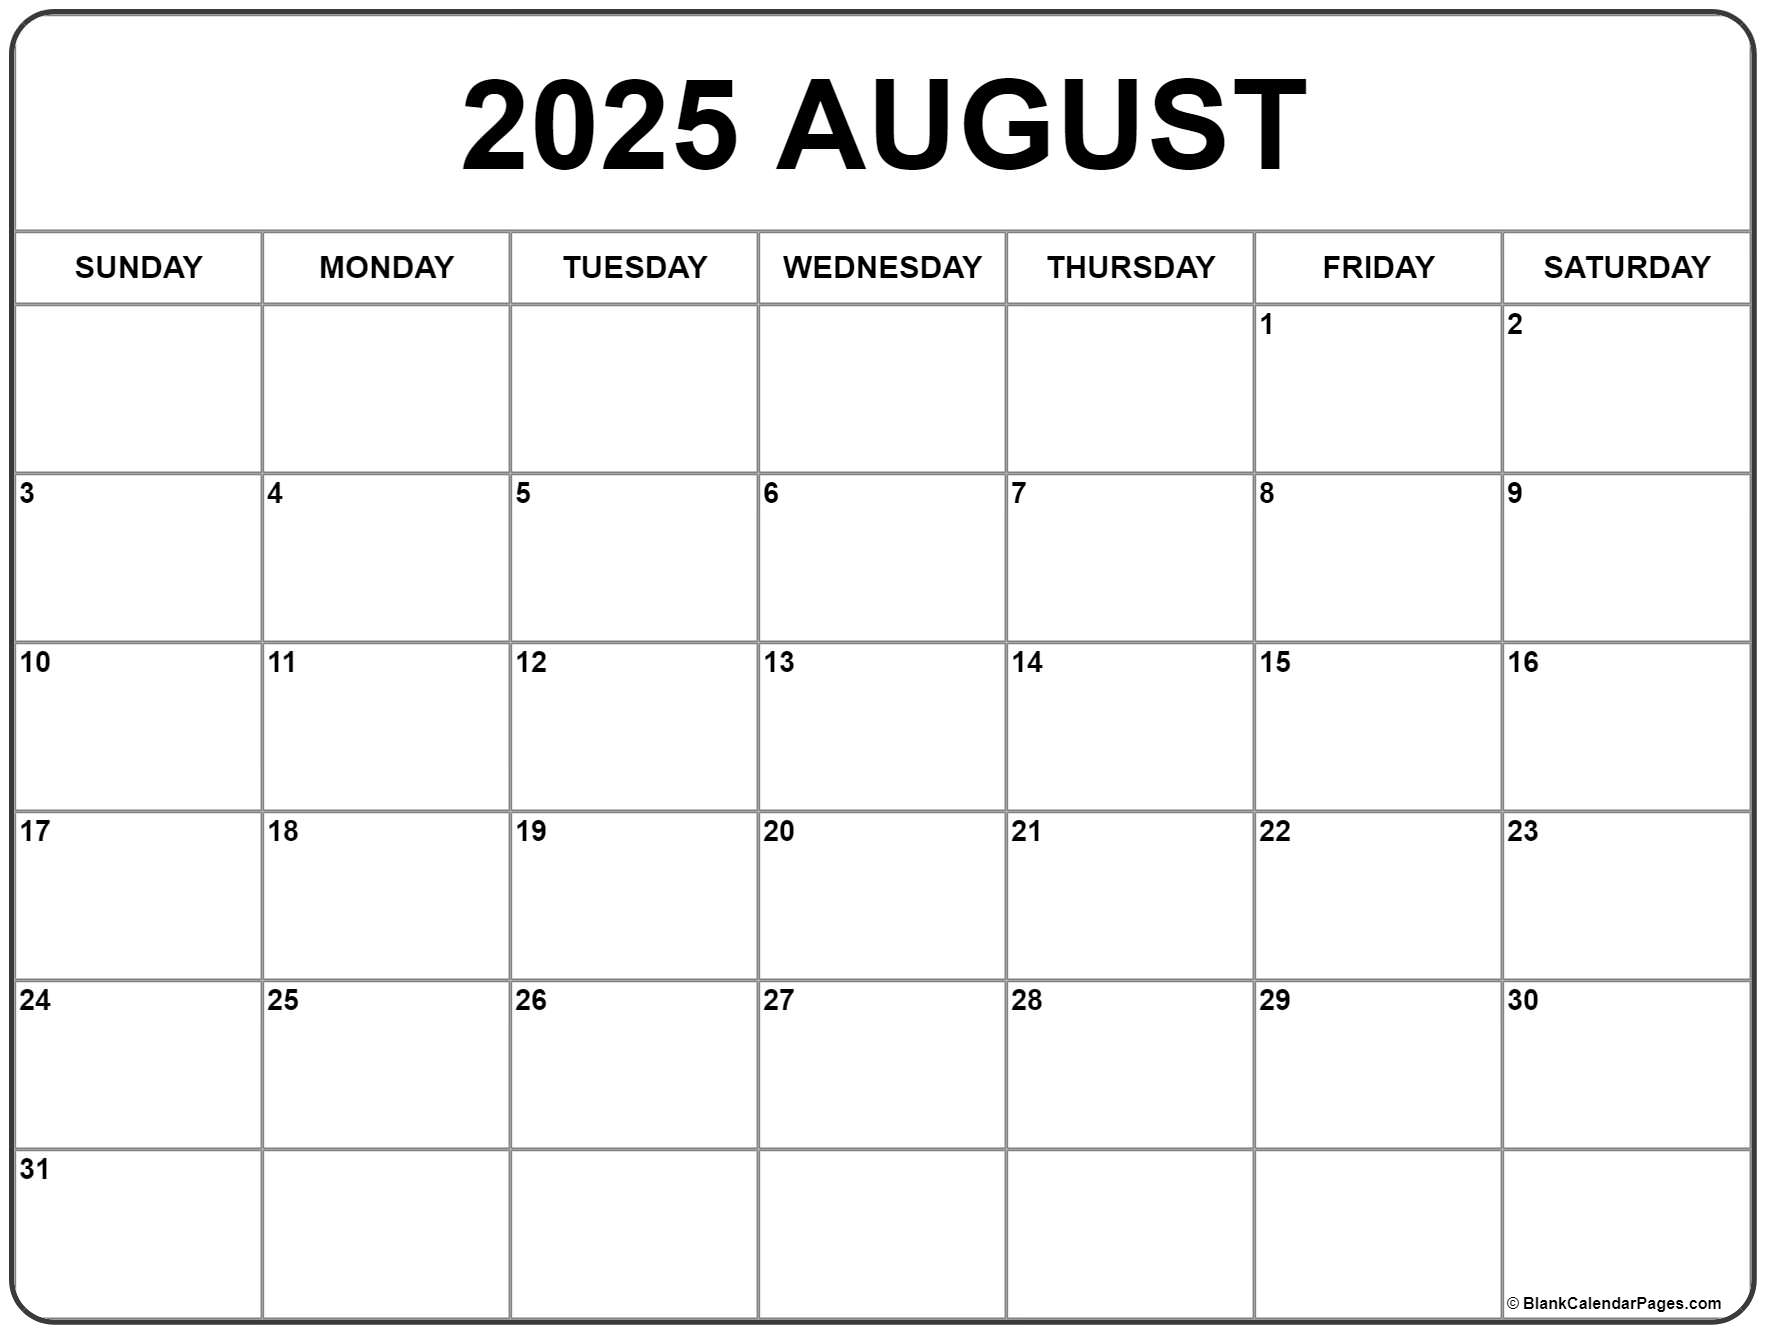 August 2025 Calendar Template Word 